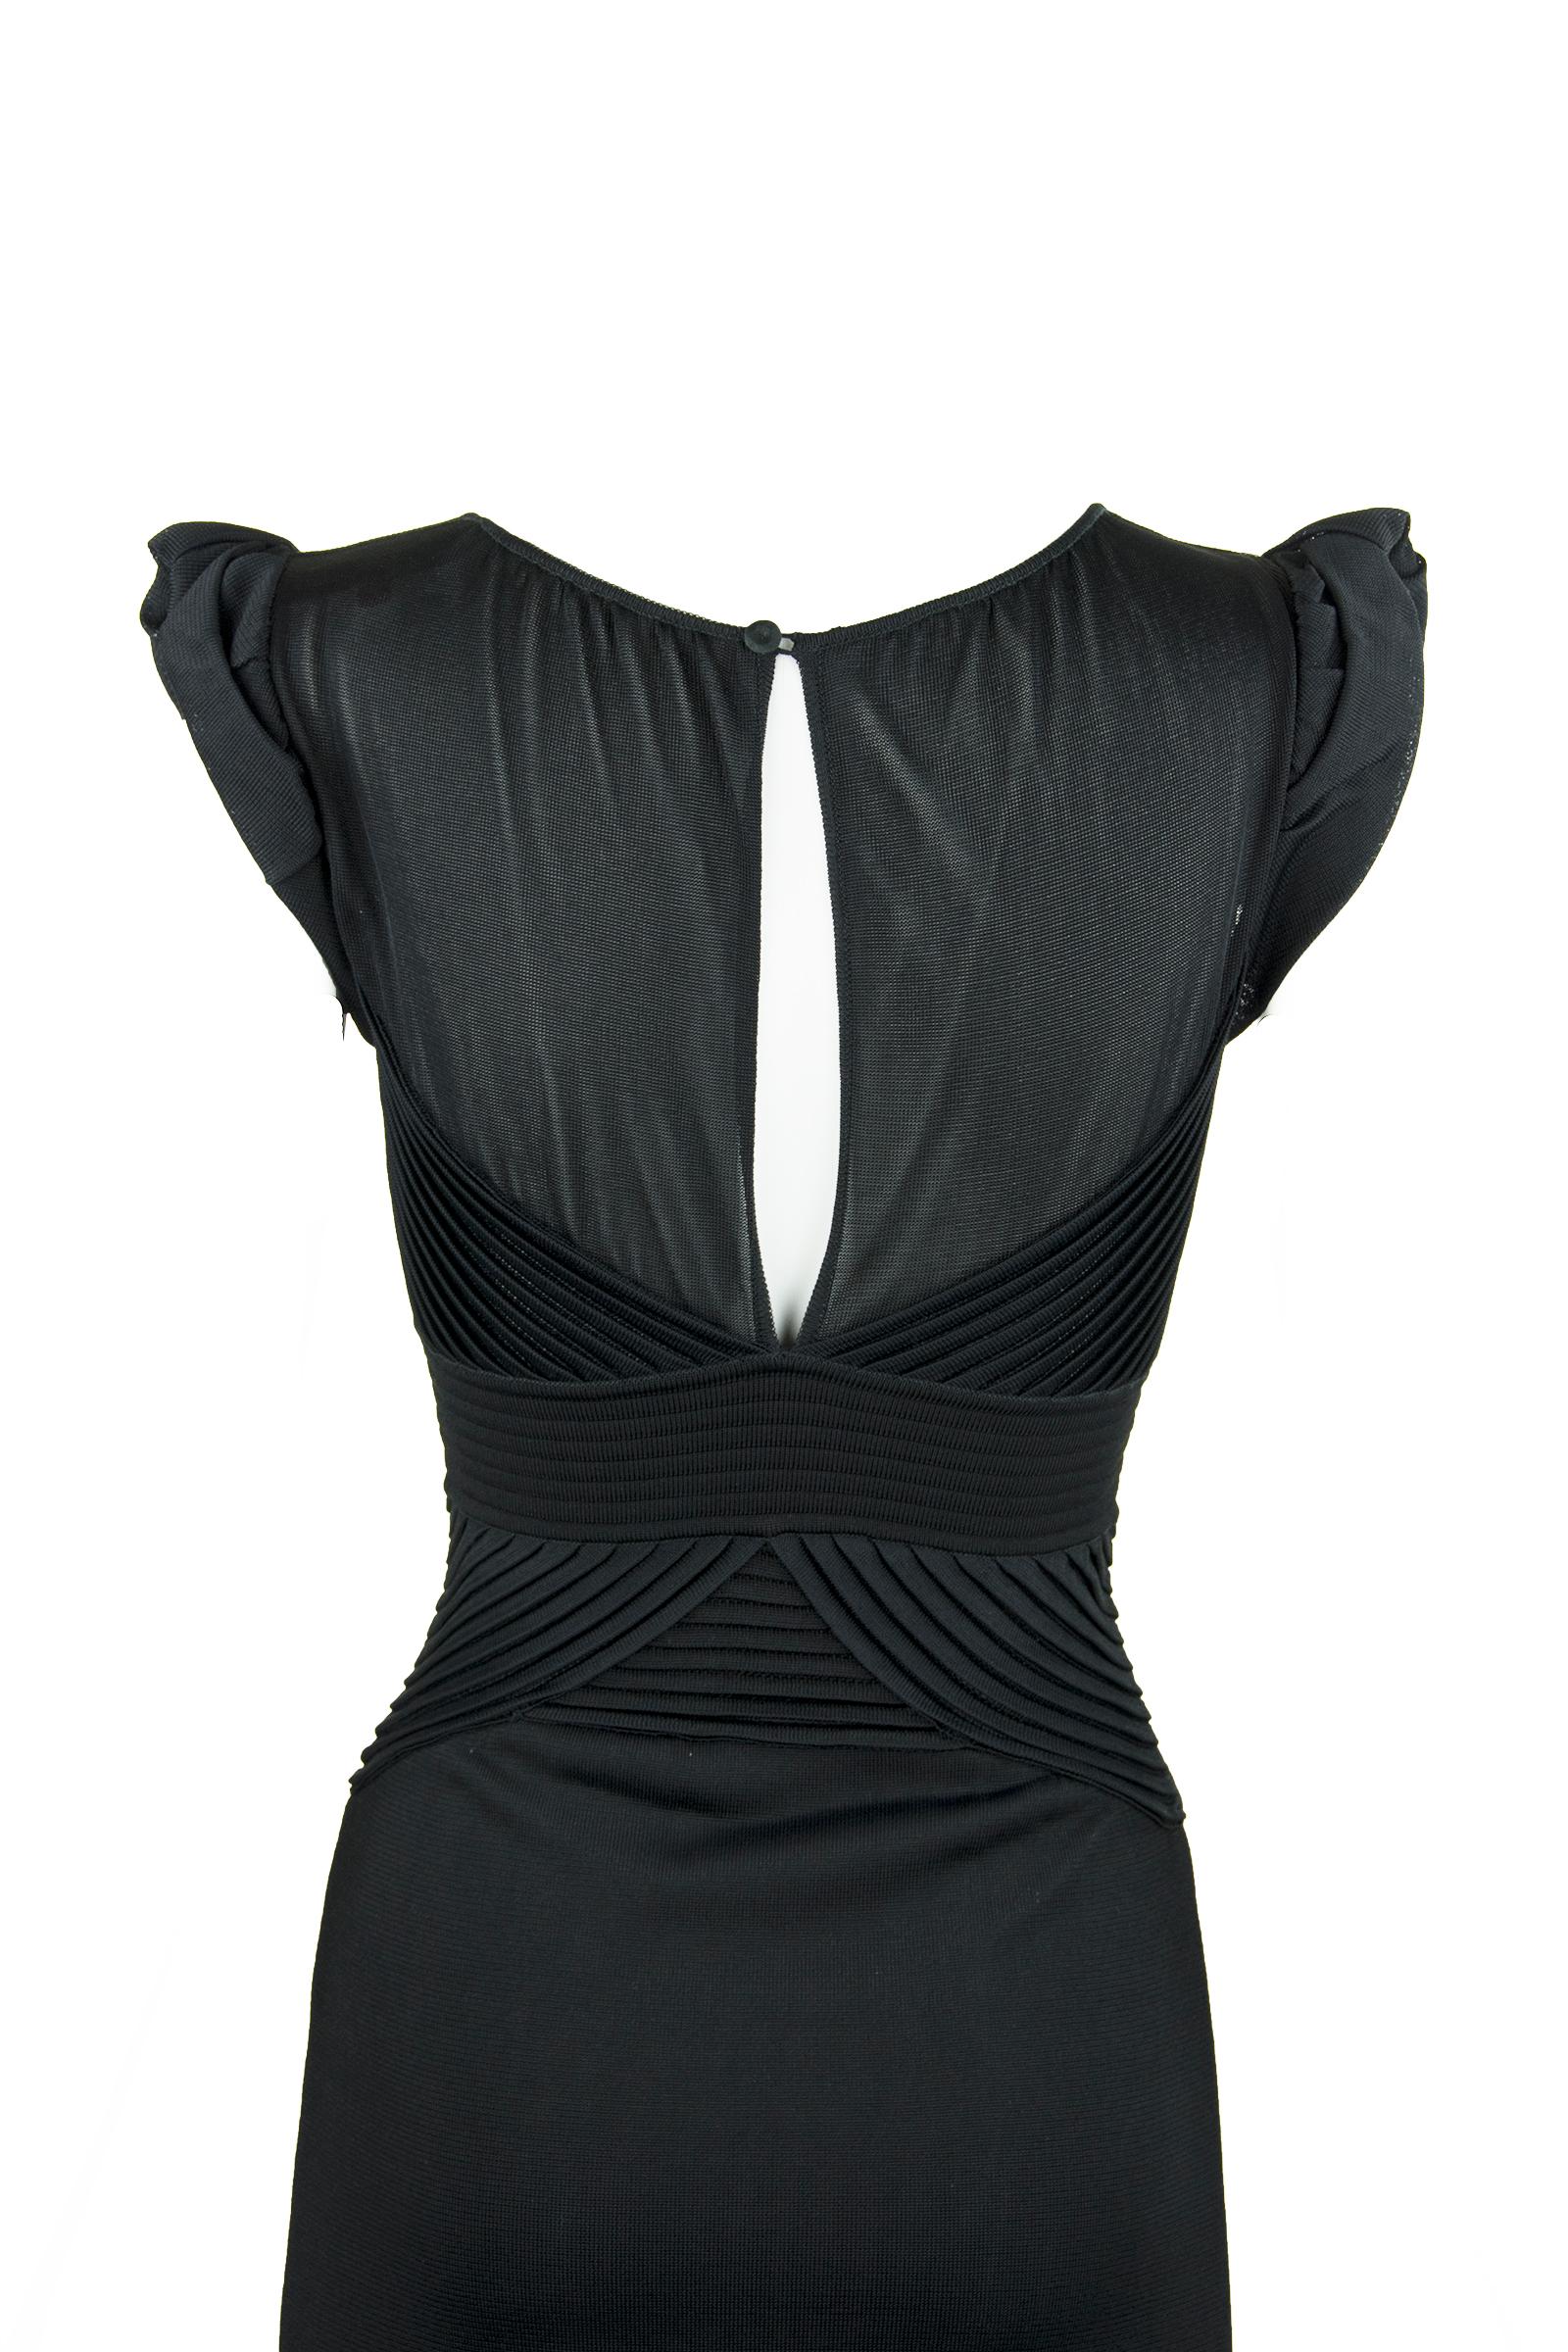 Women's Christian Lacroix Black Knit Dress  For Sale